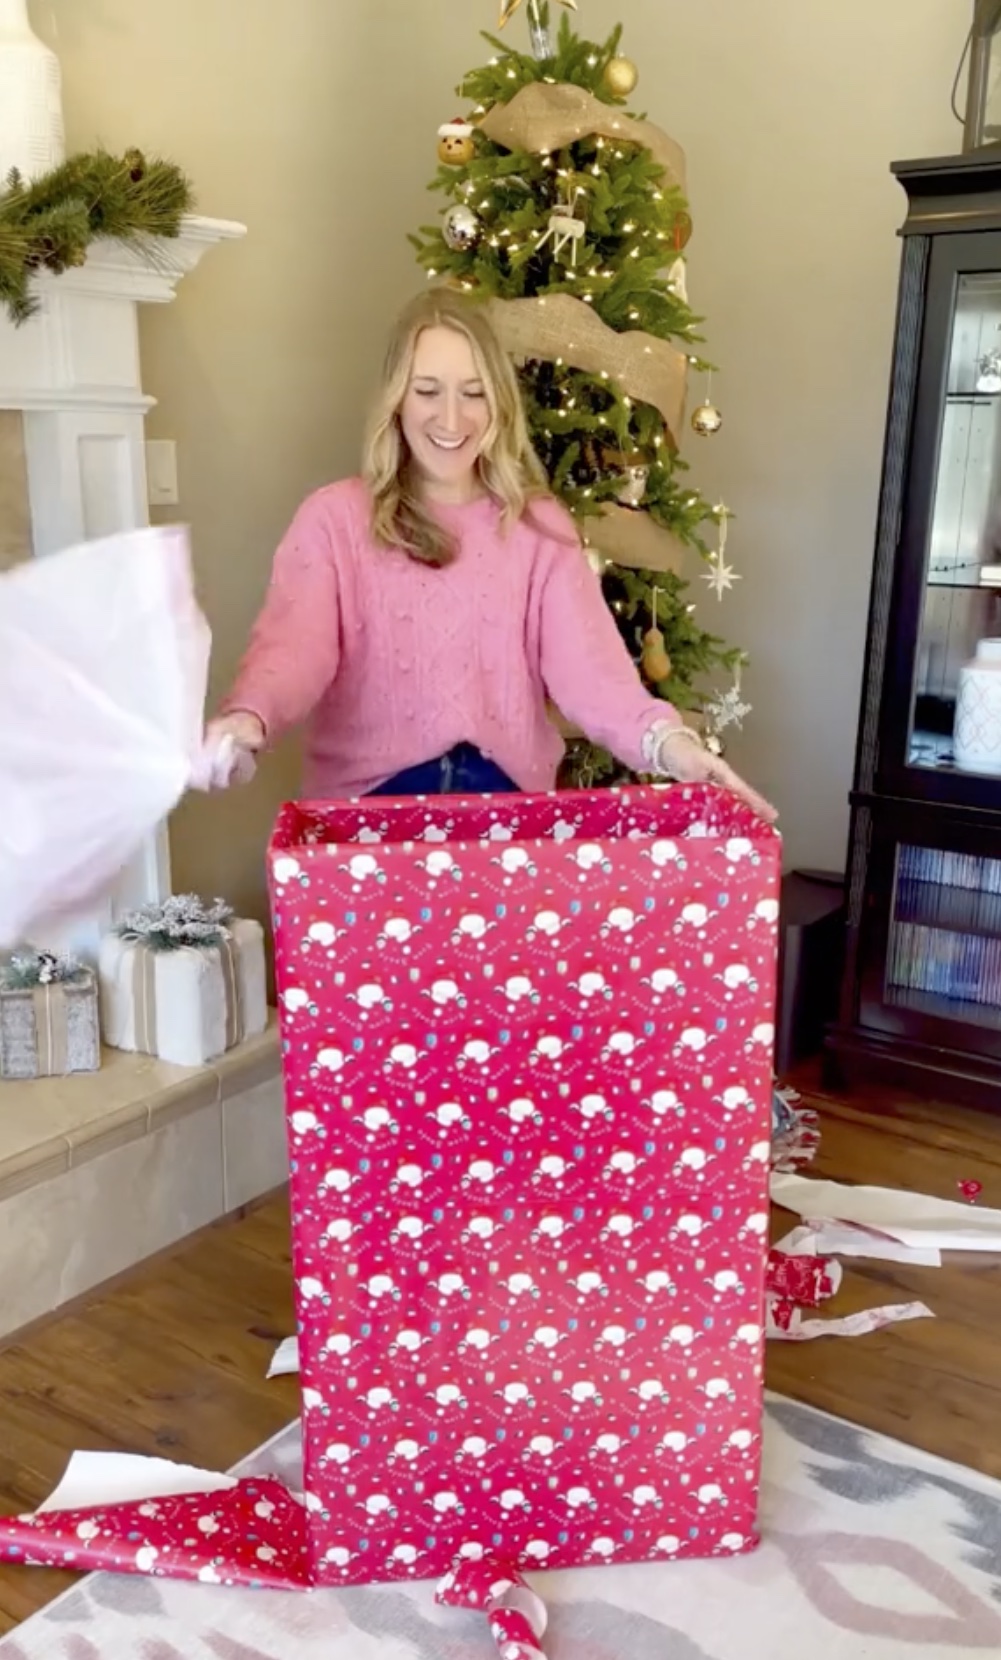 Sie hat einen Mülleimer mit festlichem Weihnachtspapier verpackt, statt mit einem einfachen Mülleimer